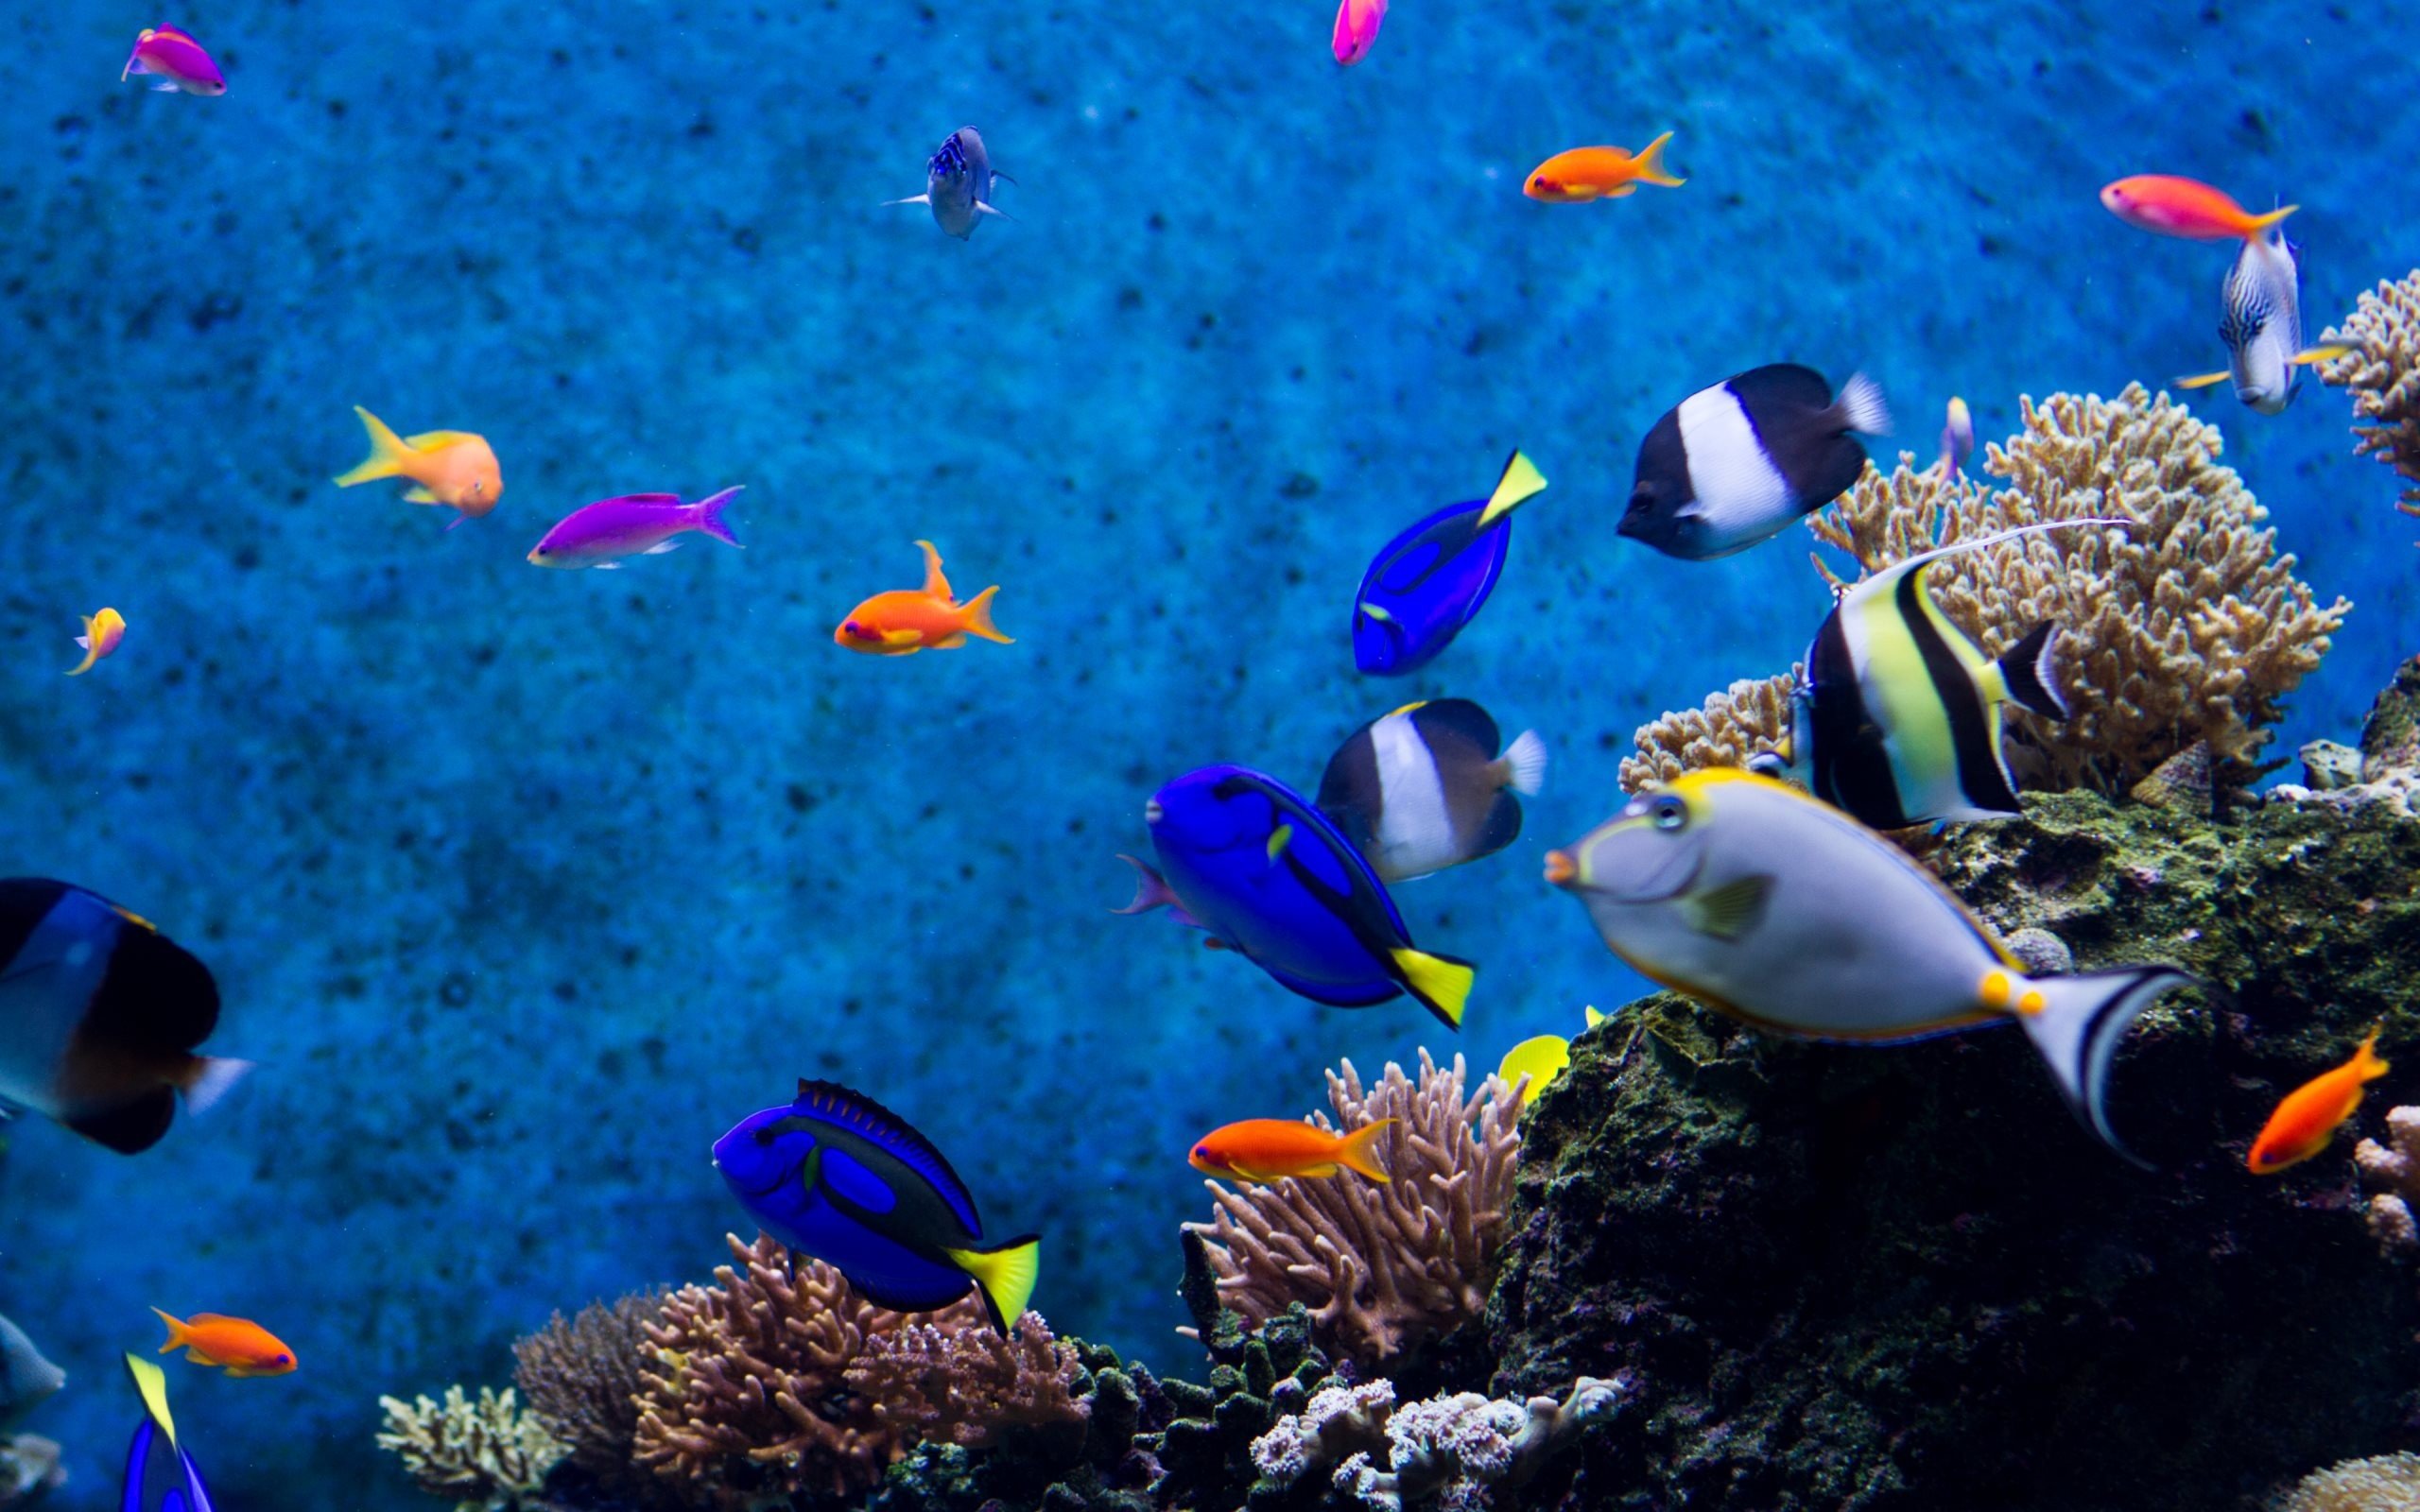 Aquarium Photos, Download The BEST Free Aquarium Stock Photos & HD Images